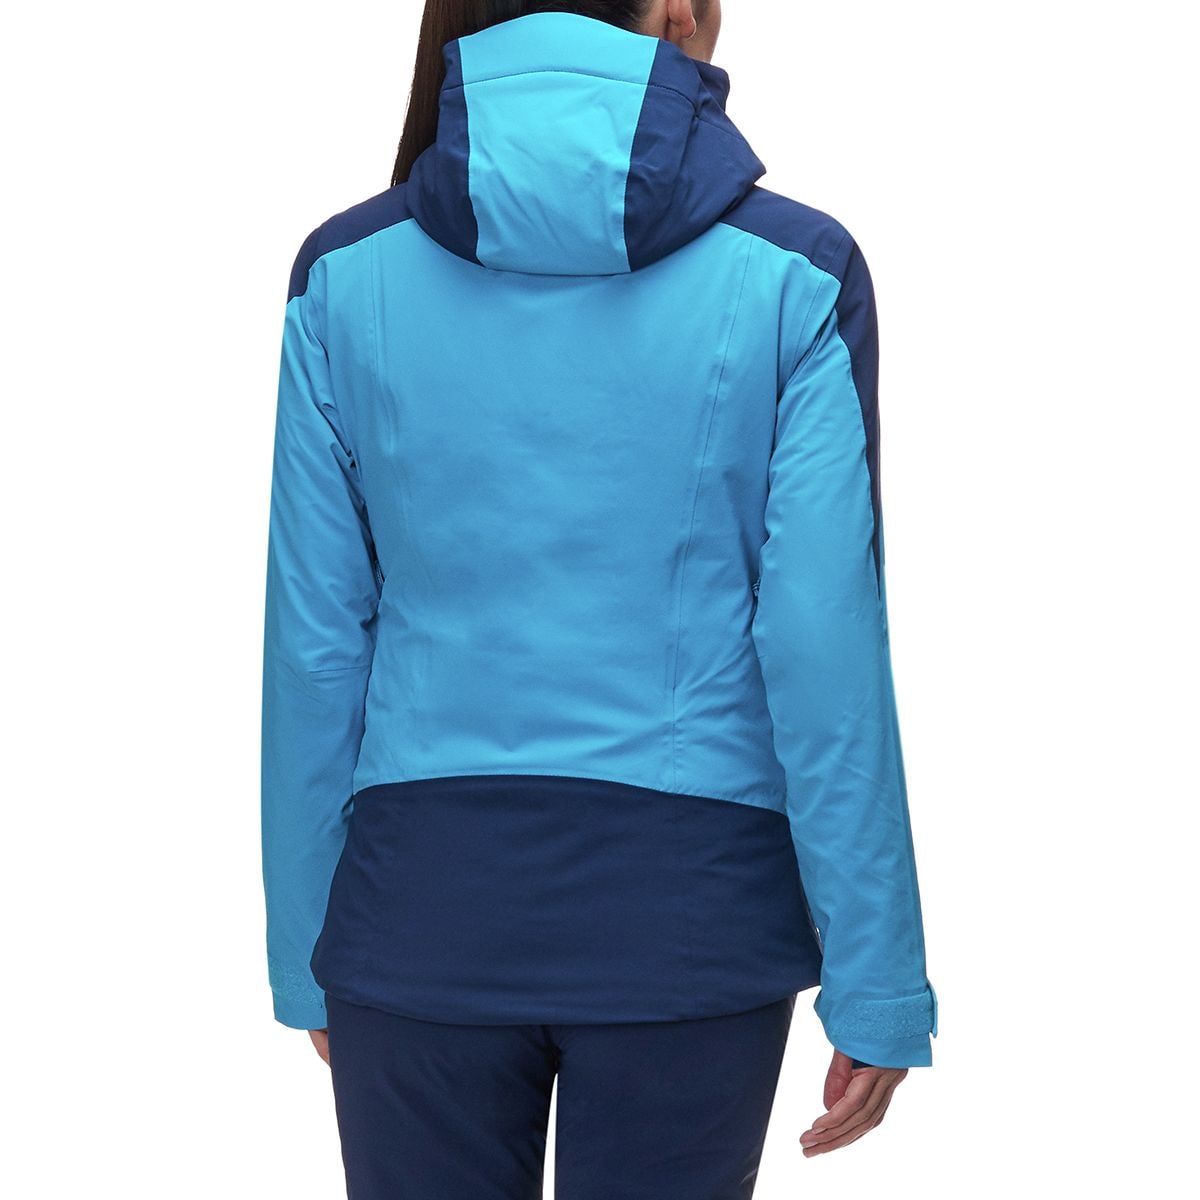 Salomon Icerocket Jacket - Women's - Clothing